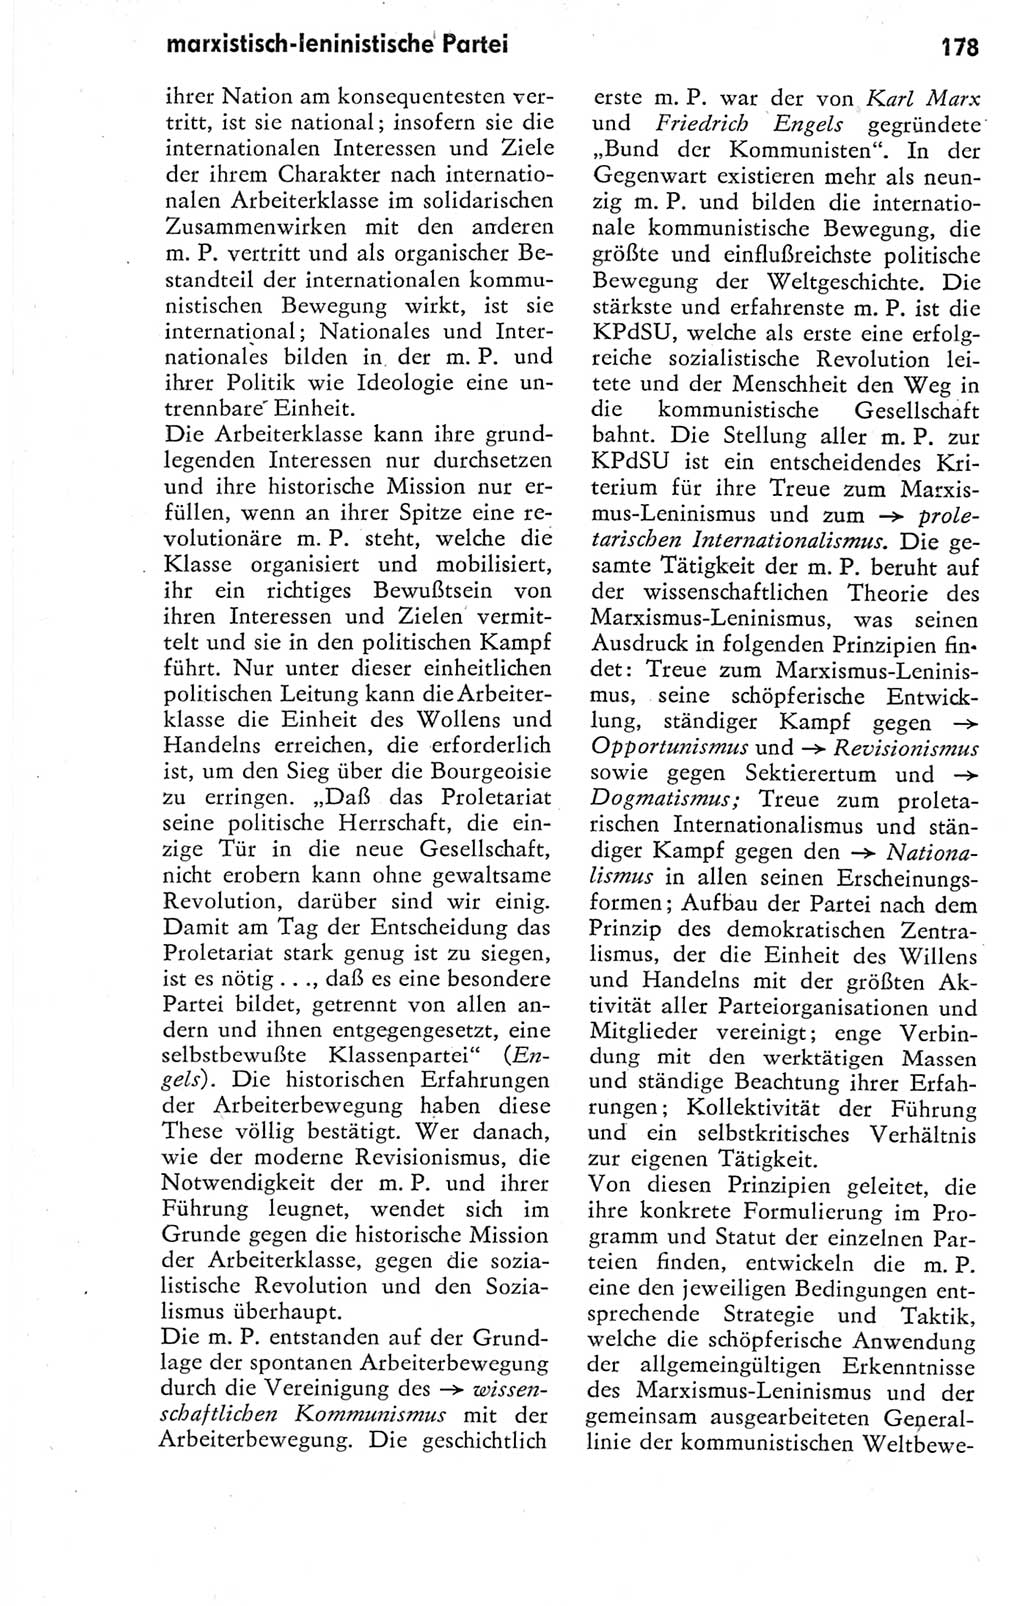 Kleines Wörterbuch der marxistisch-leninistischen Philosophie [Deutsche Demokratische Republik (DDR)] 1974, Seite 185 (Kl. Wb. ML Phil. DDR 1974, S. 185)